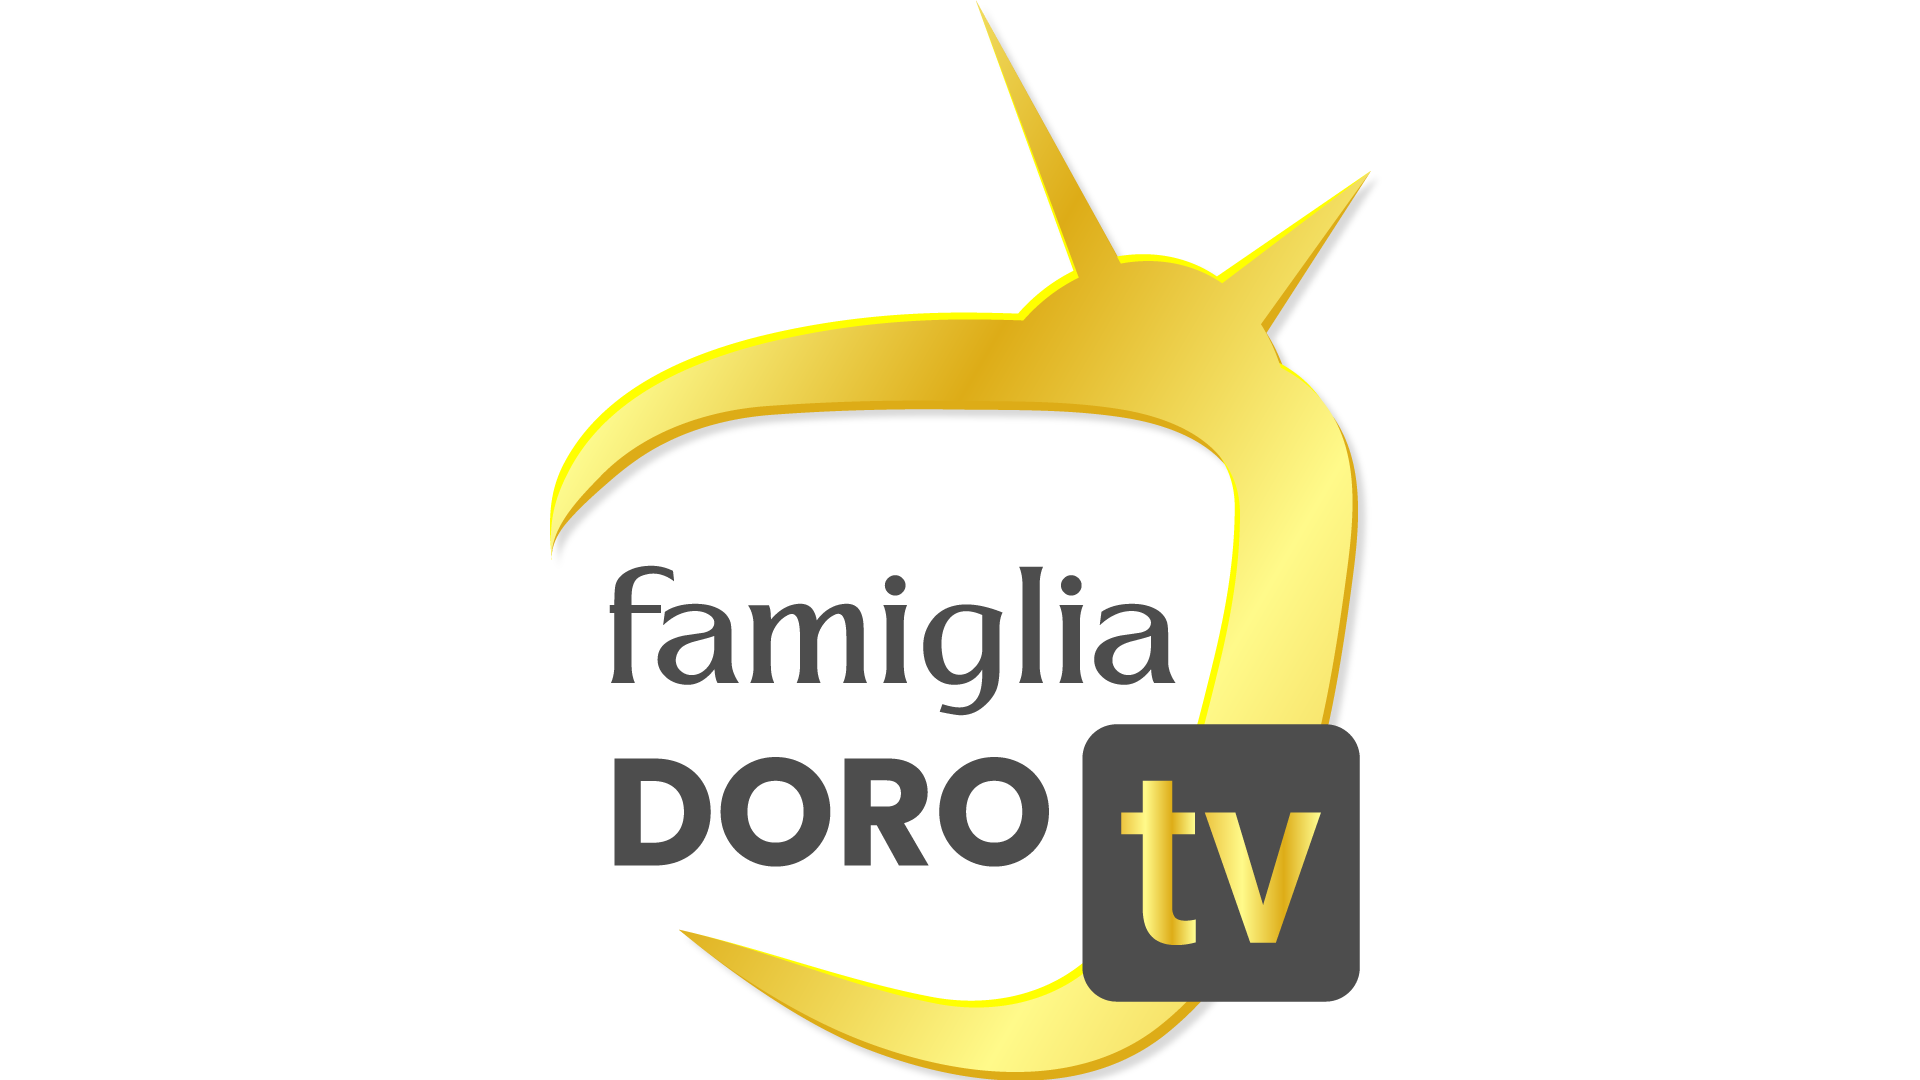 Famigliadoro TV